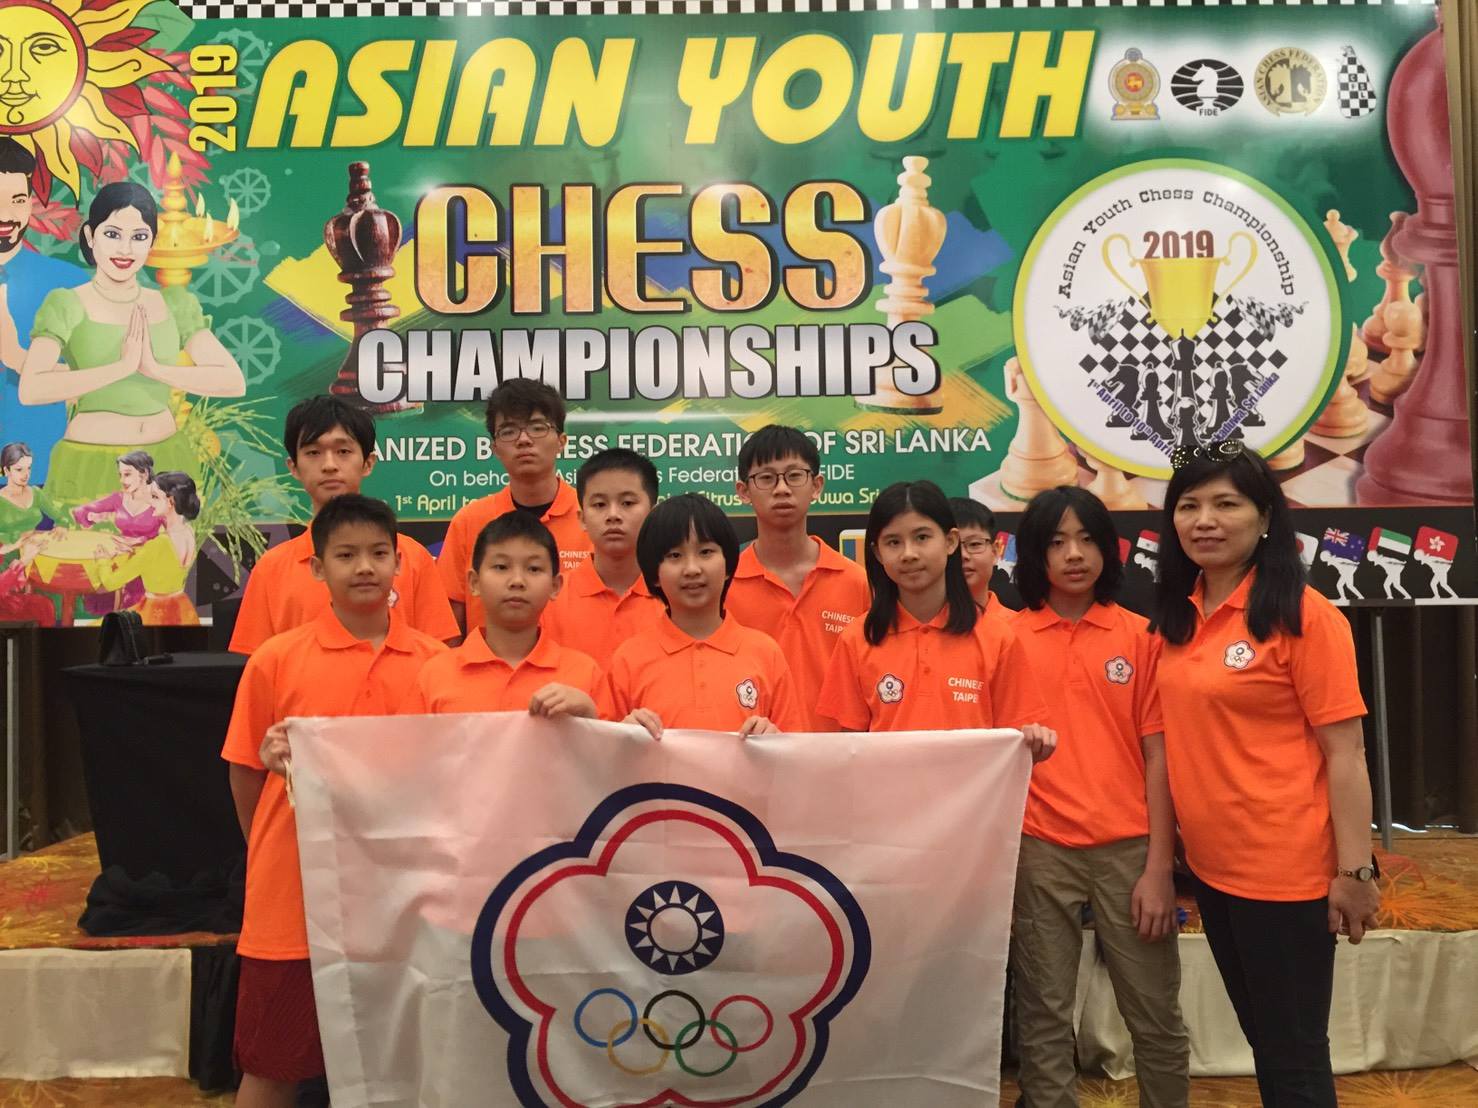 2019 斯里蘭卡亞洲青少年盃西洋棋錦標賽